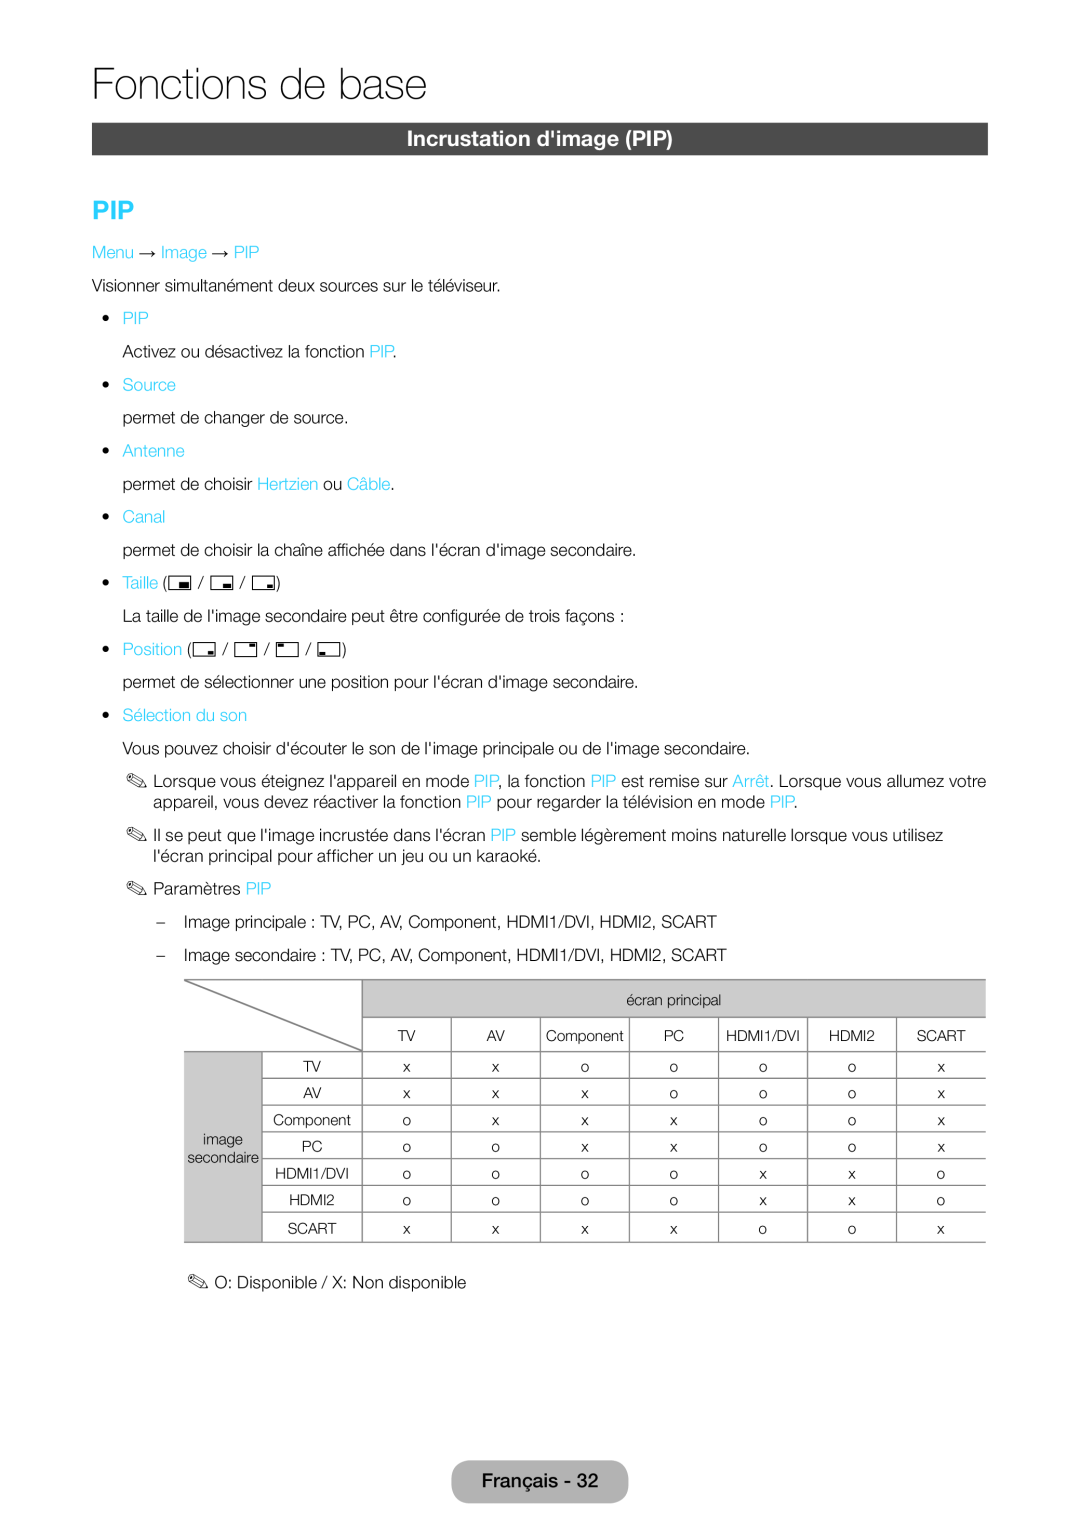 Samsung LT22D390EWB/EN manual Incrustation dimage PIP, Fonctions de base, Menu → Image → PIP, Source, Antenne, Canal 